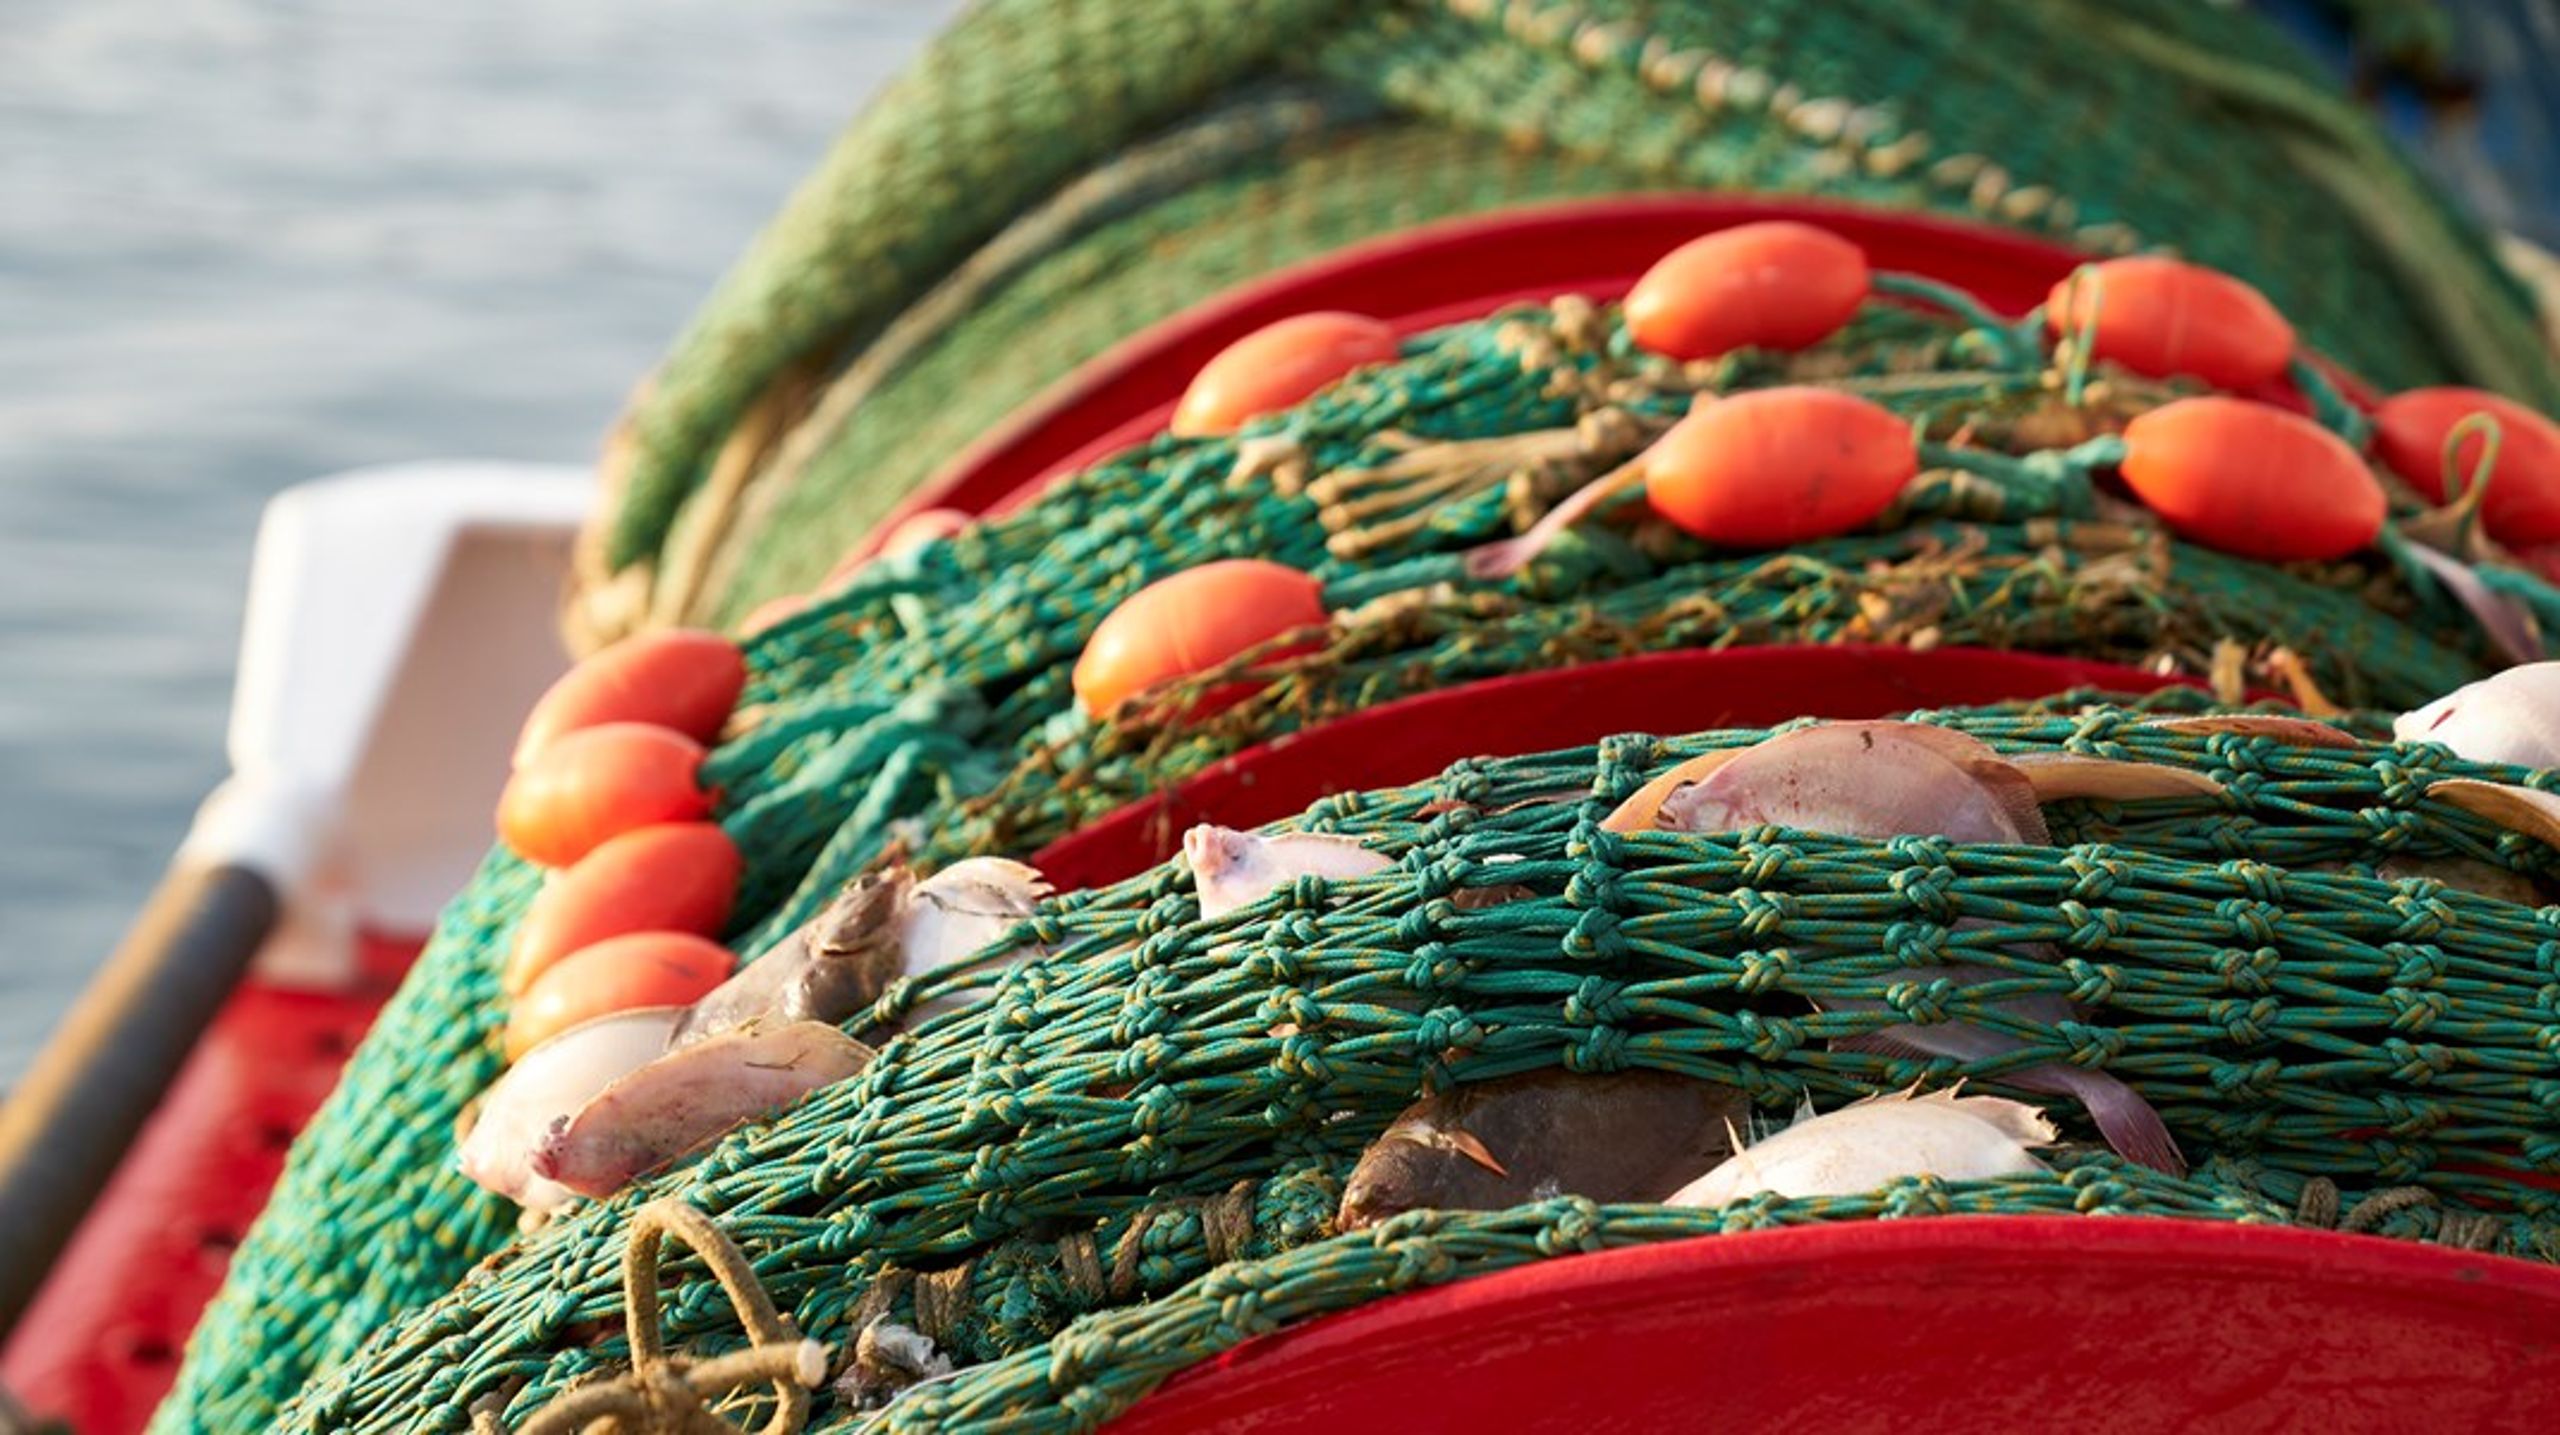 Det er ikke forbavsende, at den danske fiskemels- og fiskeolieindustri tager til genmæle. Den danske fiskemels- og fiskeolieindustri er førende i EU og blandt de største i verden, så der er store økonomiske interesser på spil, skriver biolog Søren Mark Jensen.